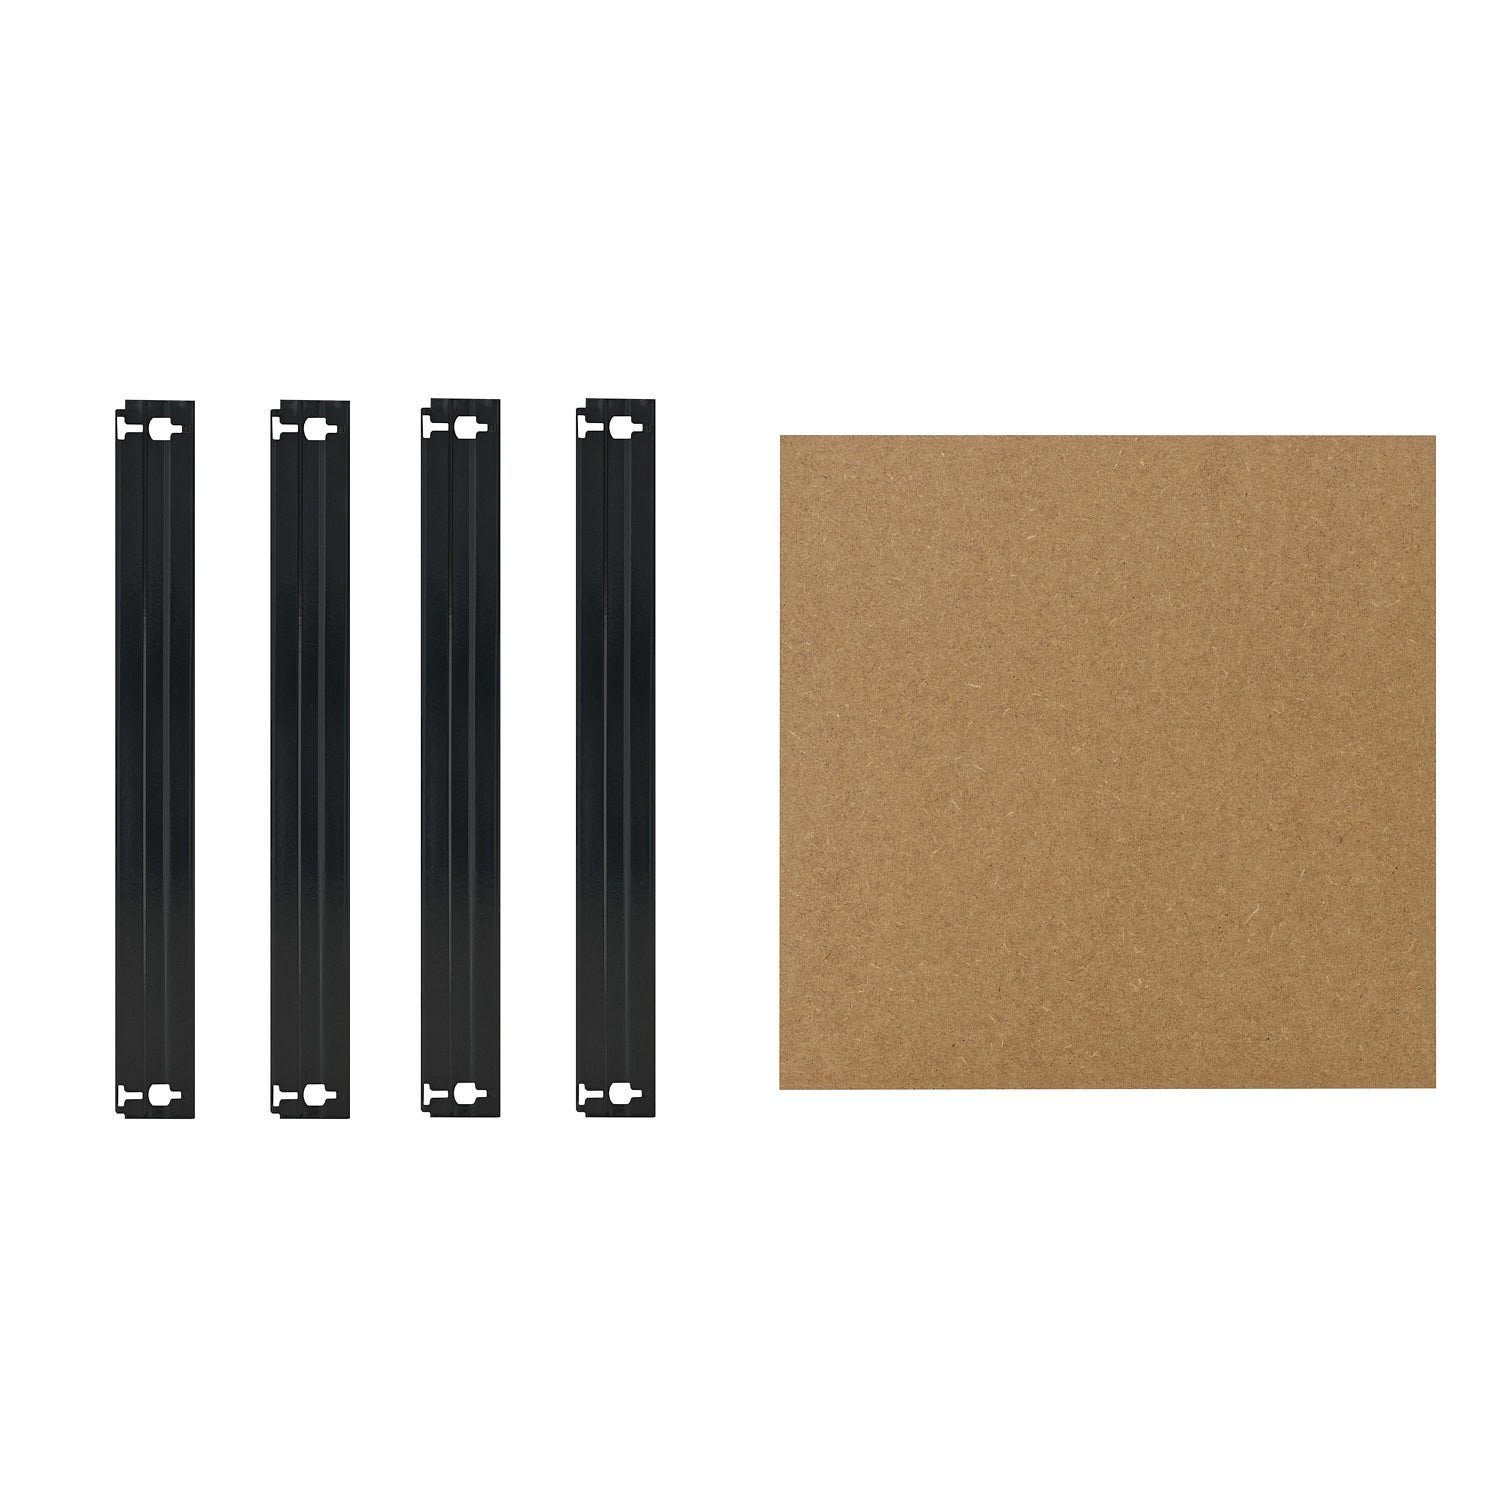 shelfplaza Schwerlastregal BLACK, Komplettes Fachboden-Set für 50x50 cm Steckregale in schwarz, HDF-Fachboden, zusätzliche Fachböden für Schwerlastregale